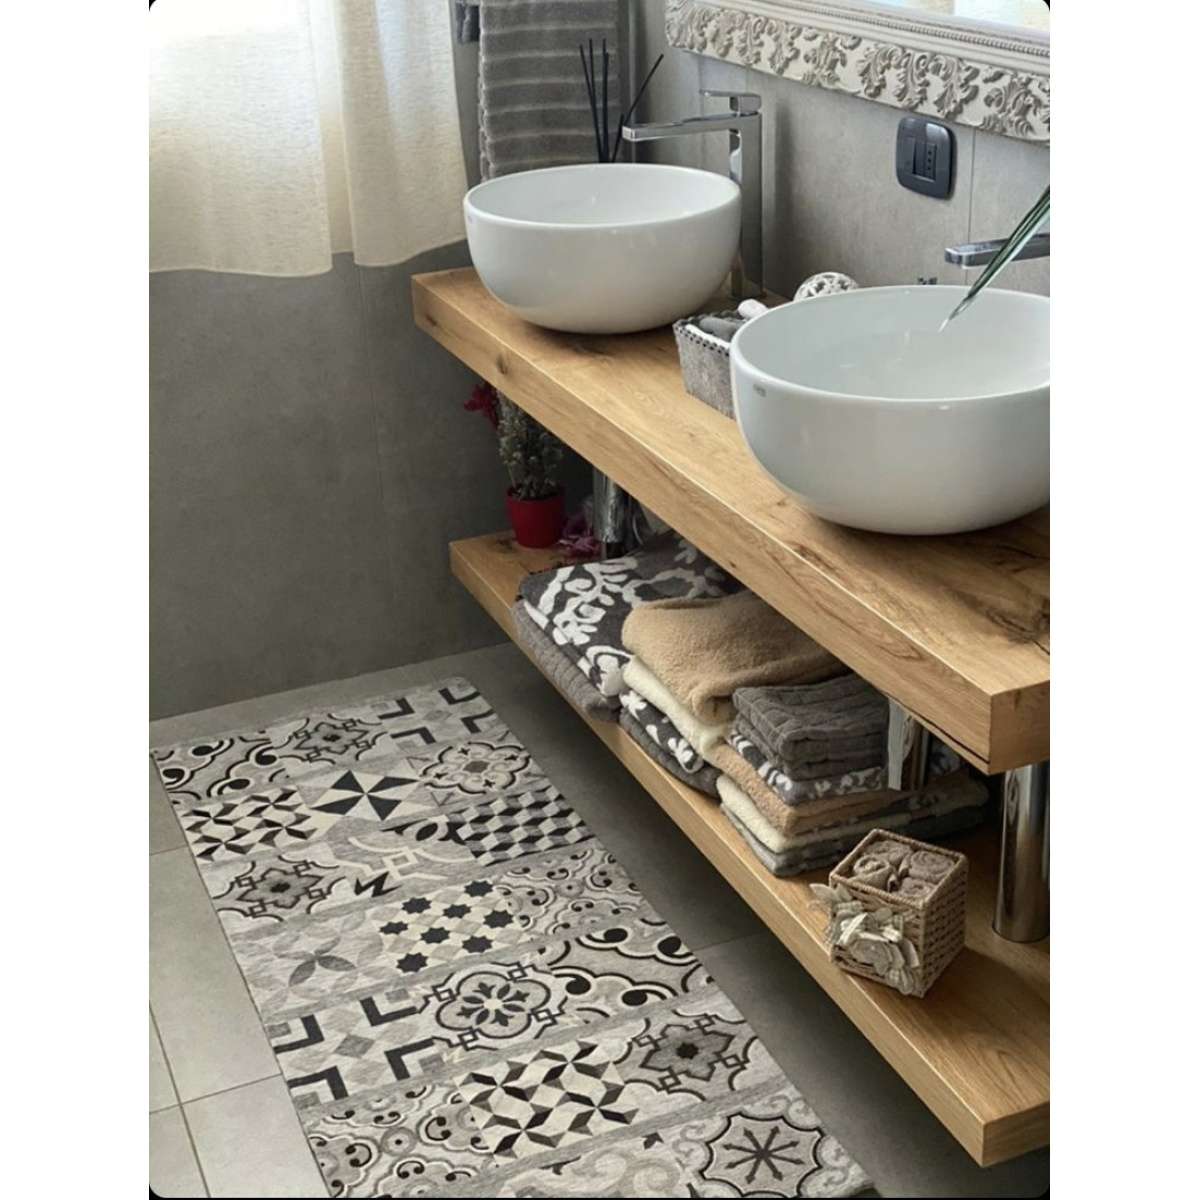 Immagine del prodotto Tappeto Cucina Cementine Grigio Antiscivolo e Lavabile in Lavatrice | Pietro Zanetti Home